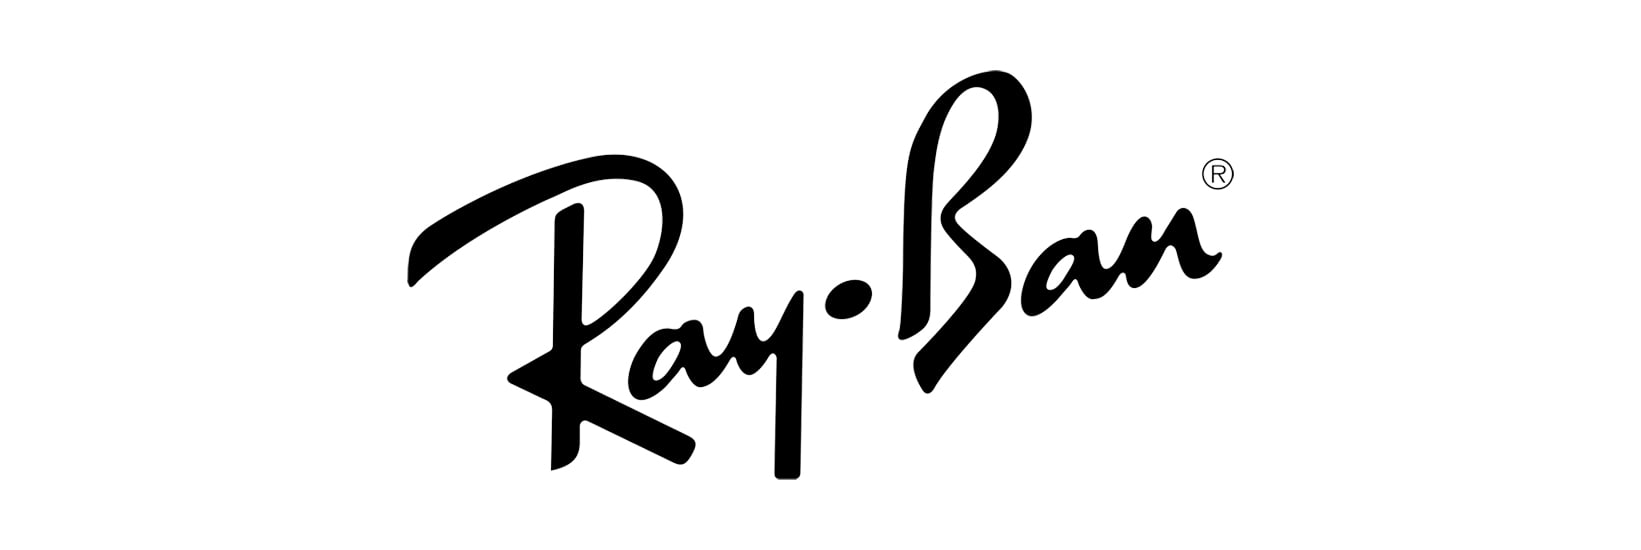 Ray-Ban logo image